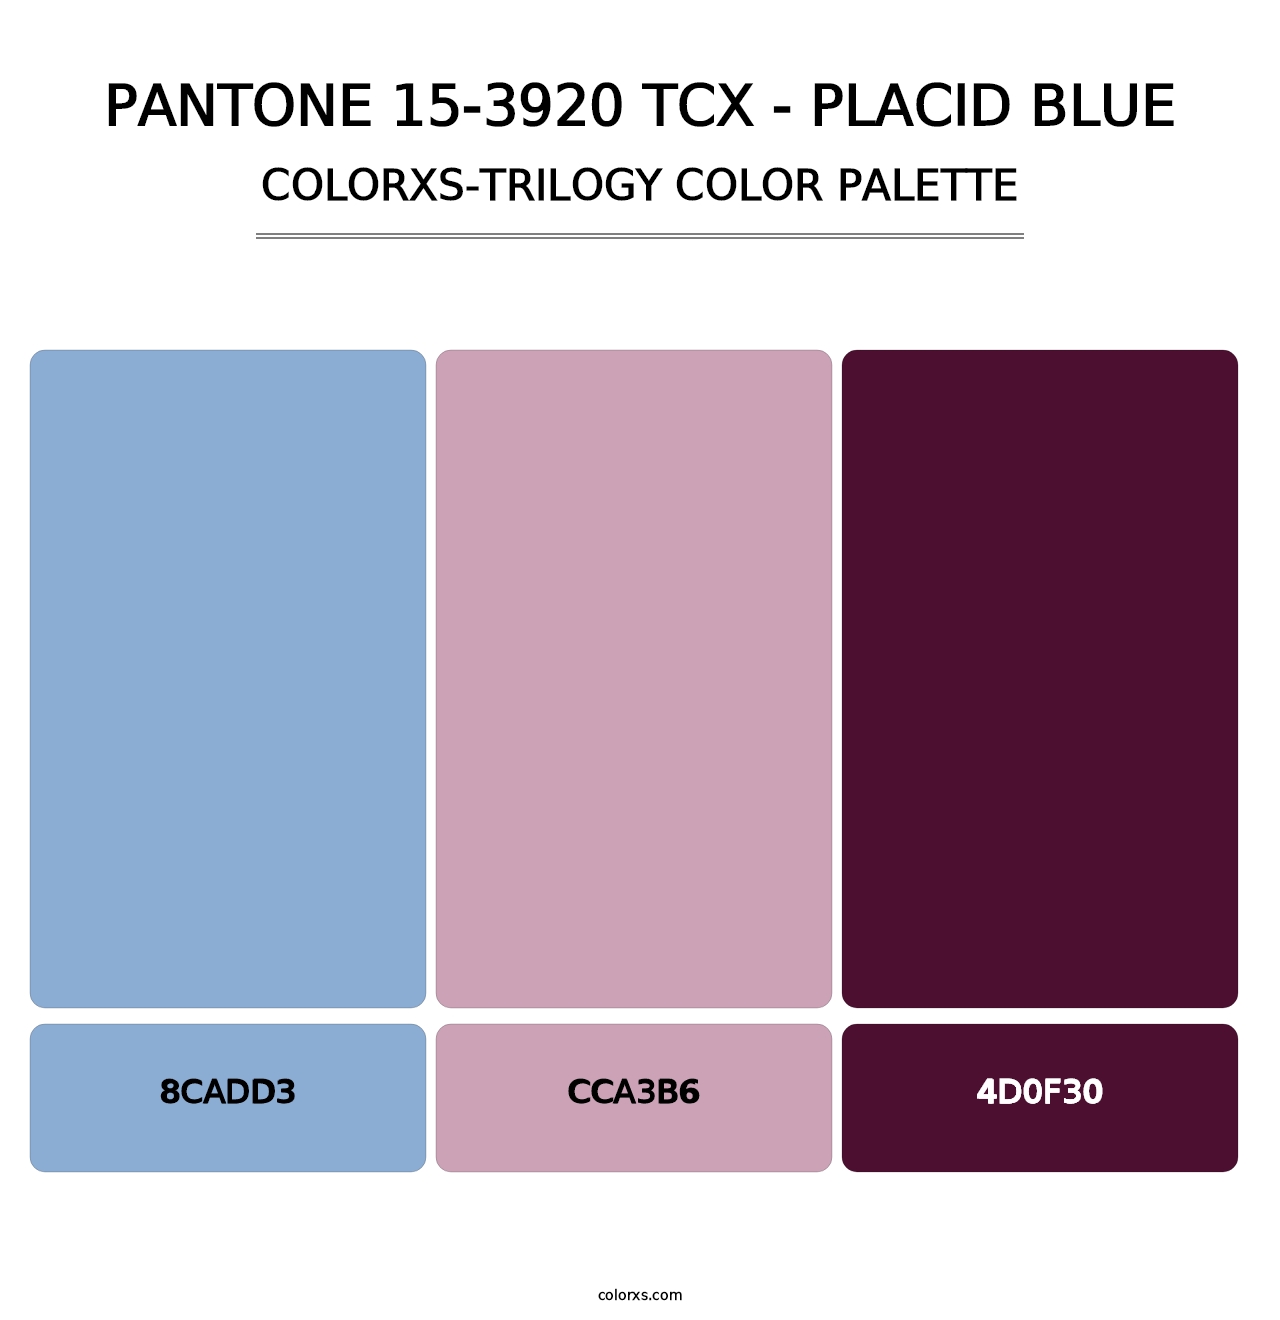 PANTONE 15-3920 TCX - Placid Blue - Colorxs Trilogy Palette